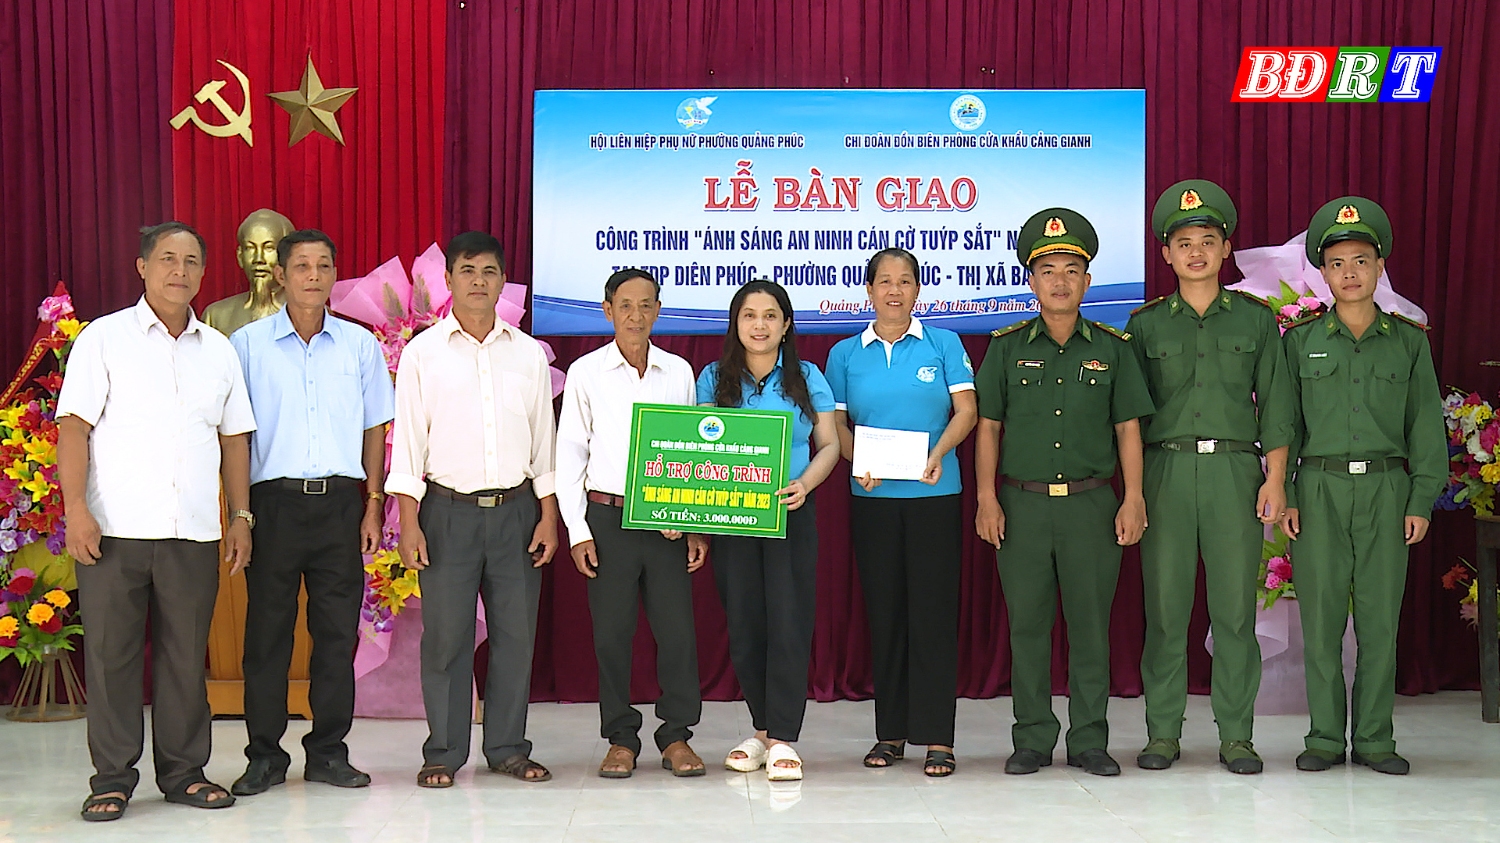 Đồn BPCK Cảng Gianh phối hợp với hội phụ nữ và UBND phường Quảng Phúc hỗ trợ công trình Ánh sáng an ninh cán cờ tuýp sắt cho người dân TDP Diên Phúc